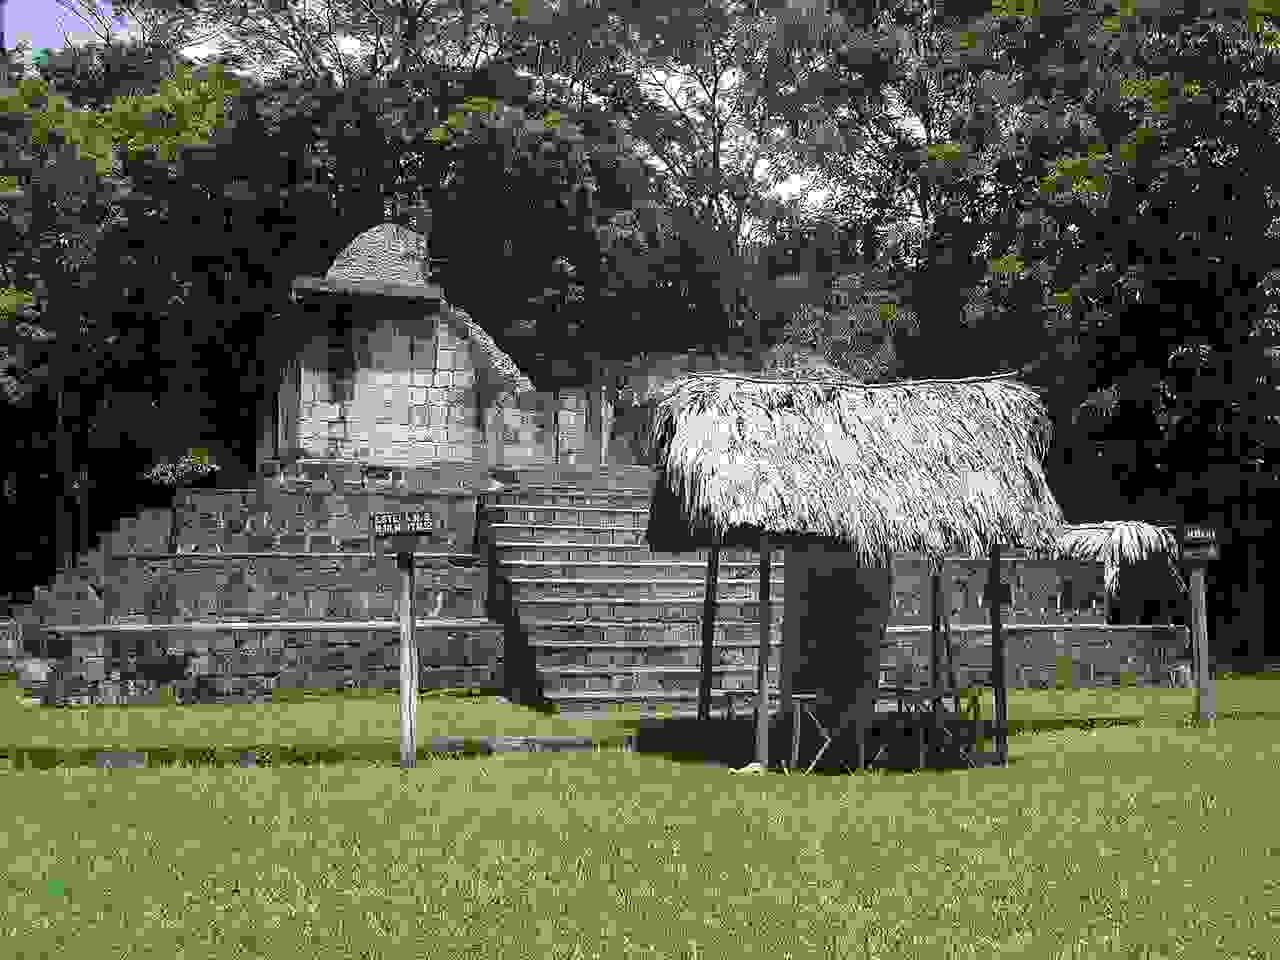 Ceibal ruins